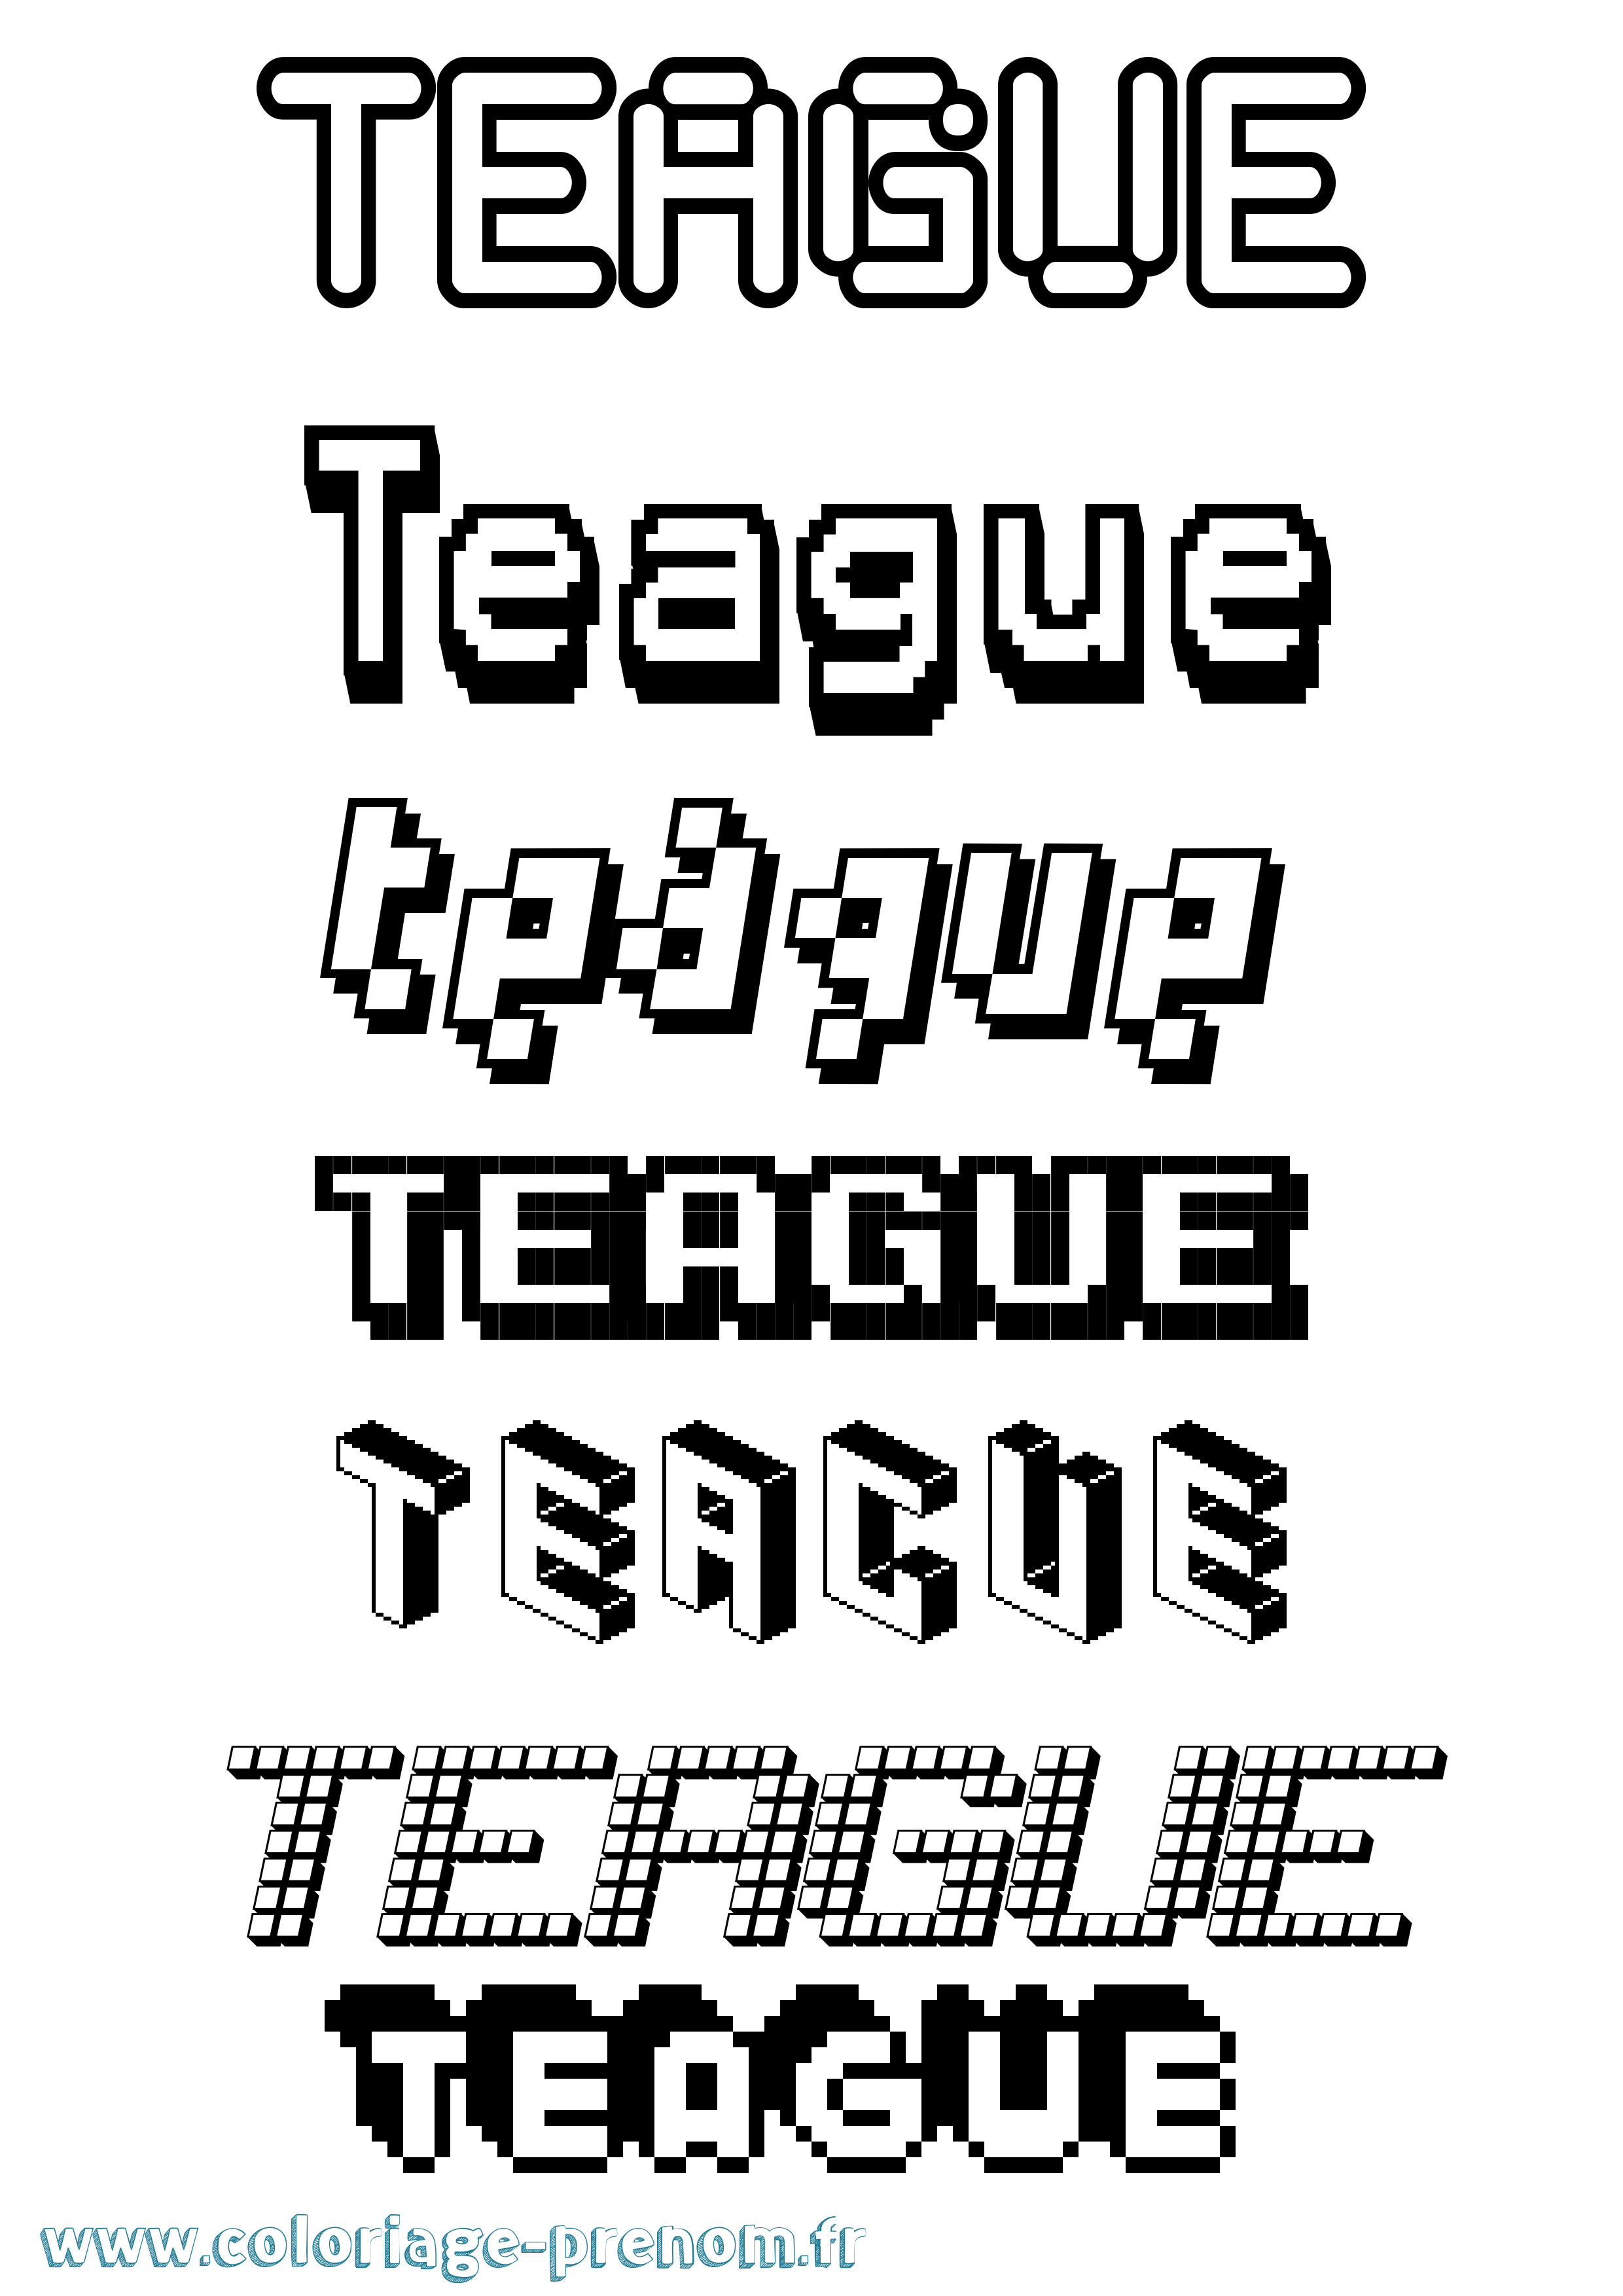 Coloriage prénom Teague Pixel